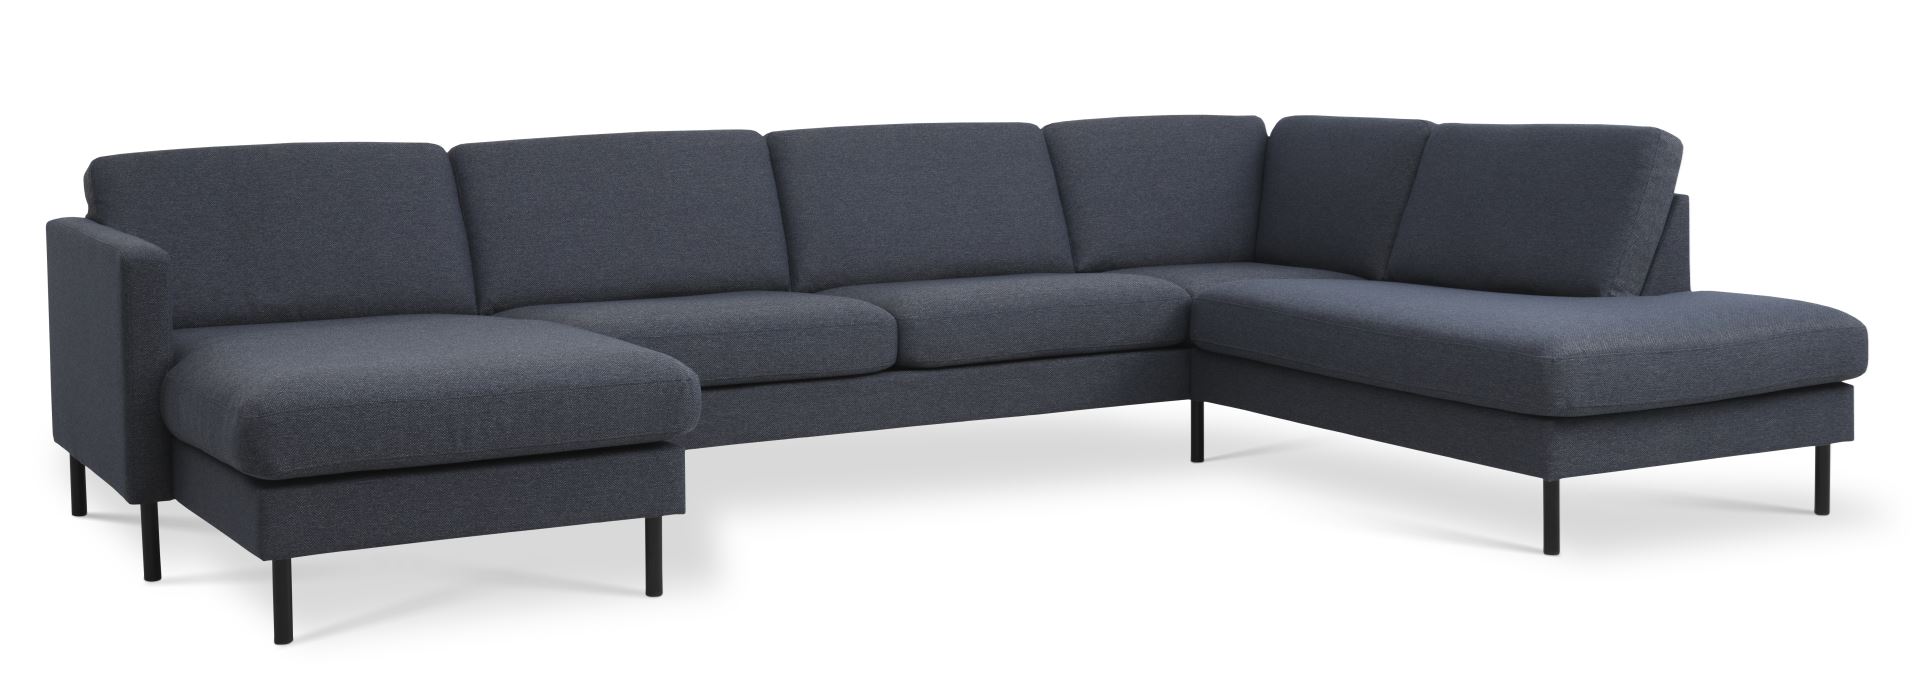 Ask sæt 55 U OE sofa, m. højre chaiselong - navy blå polyester stof og sort metal